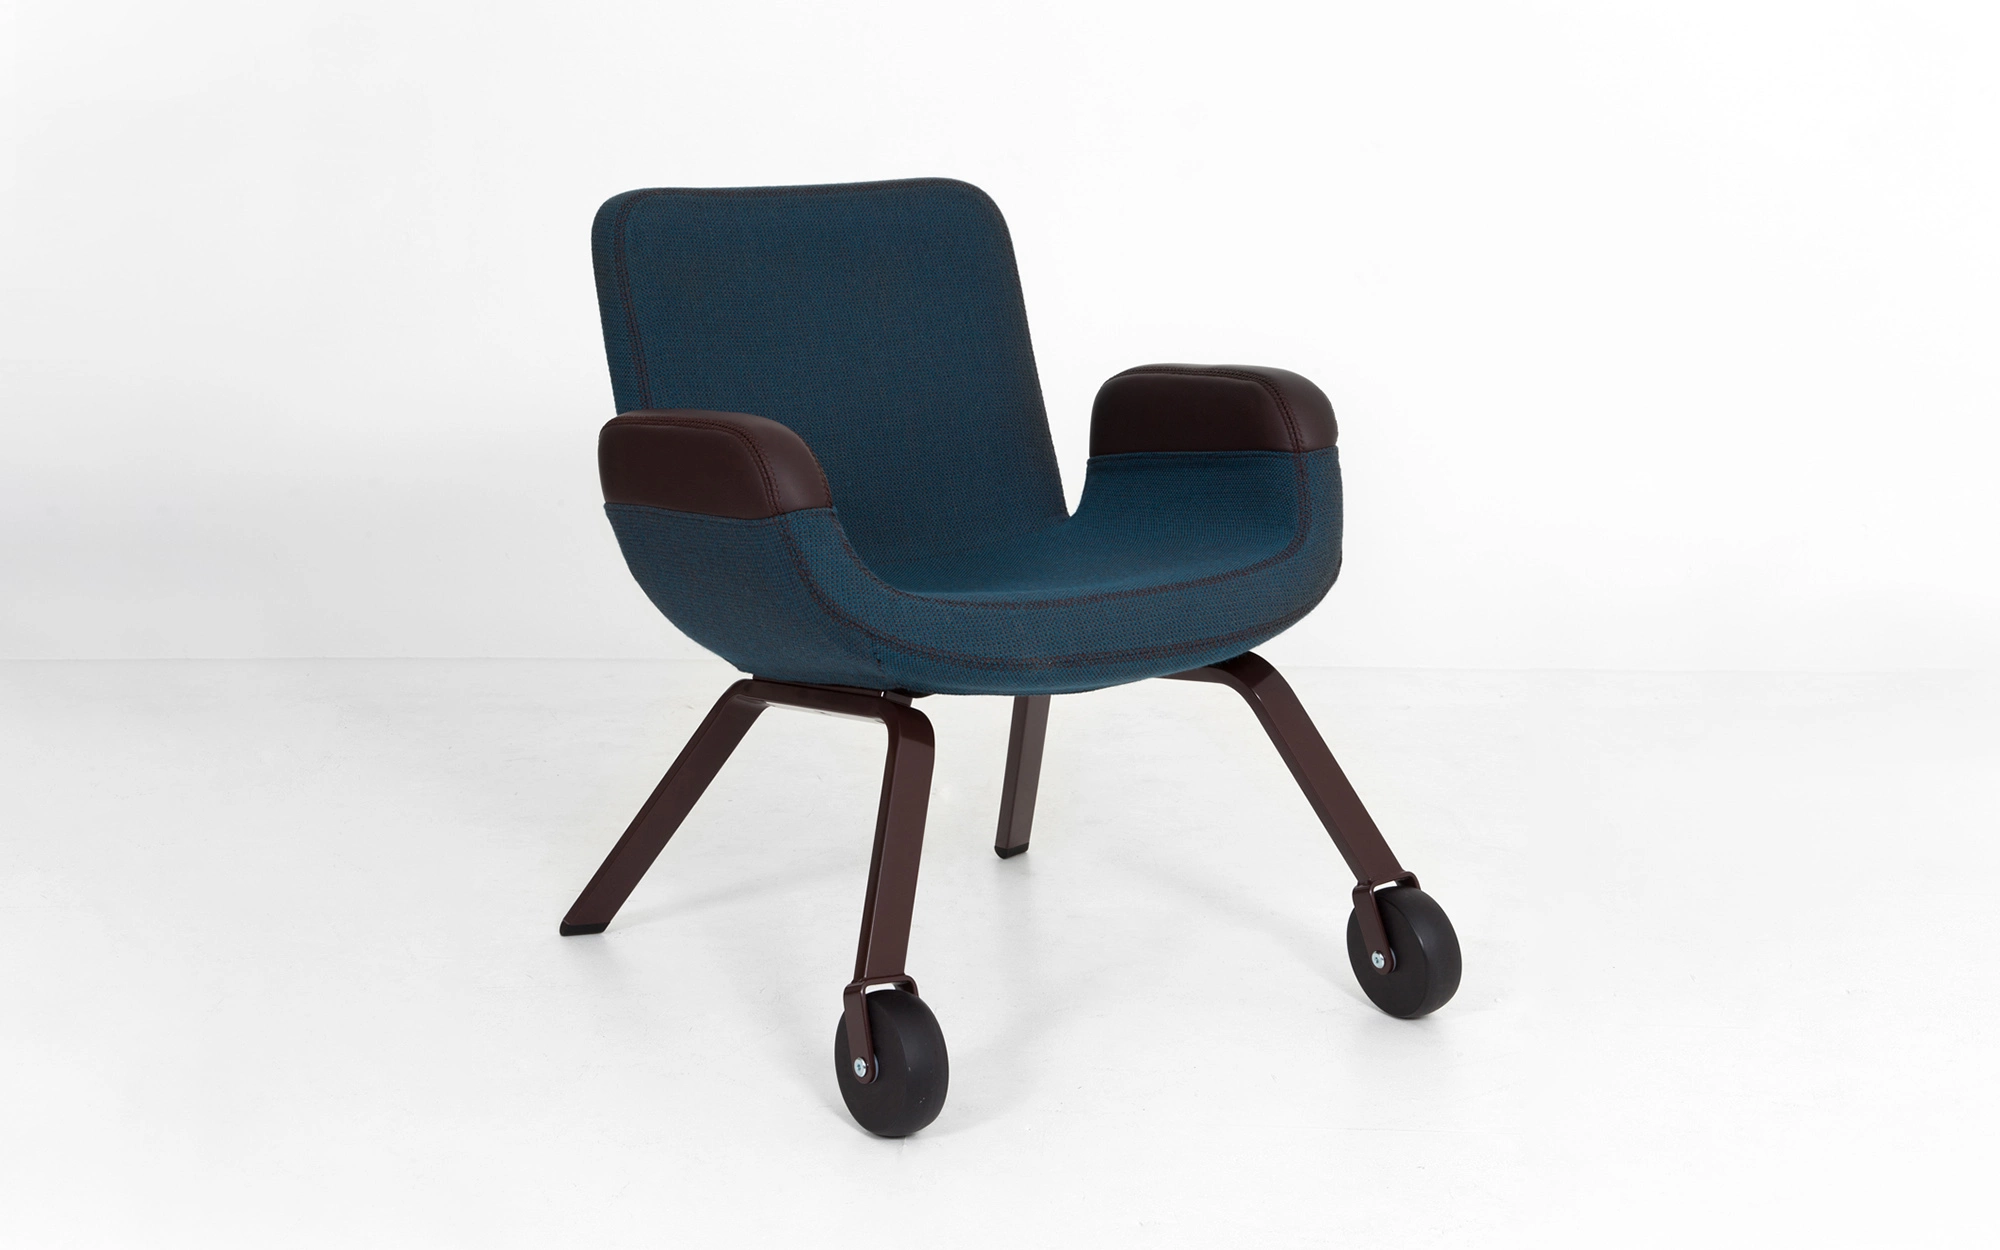 UN Lounge Chair - Hella Jongerius - Object - Galerie kreo